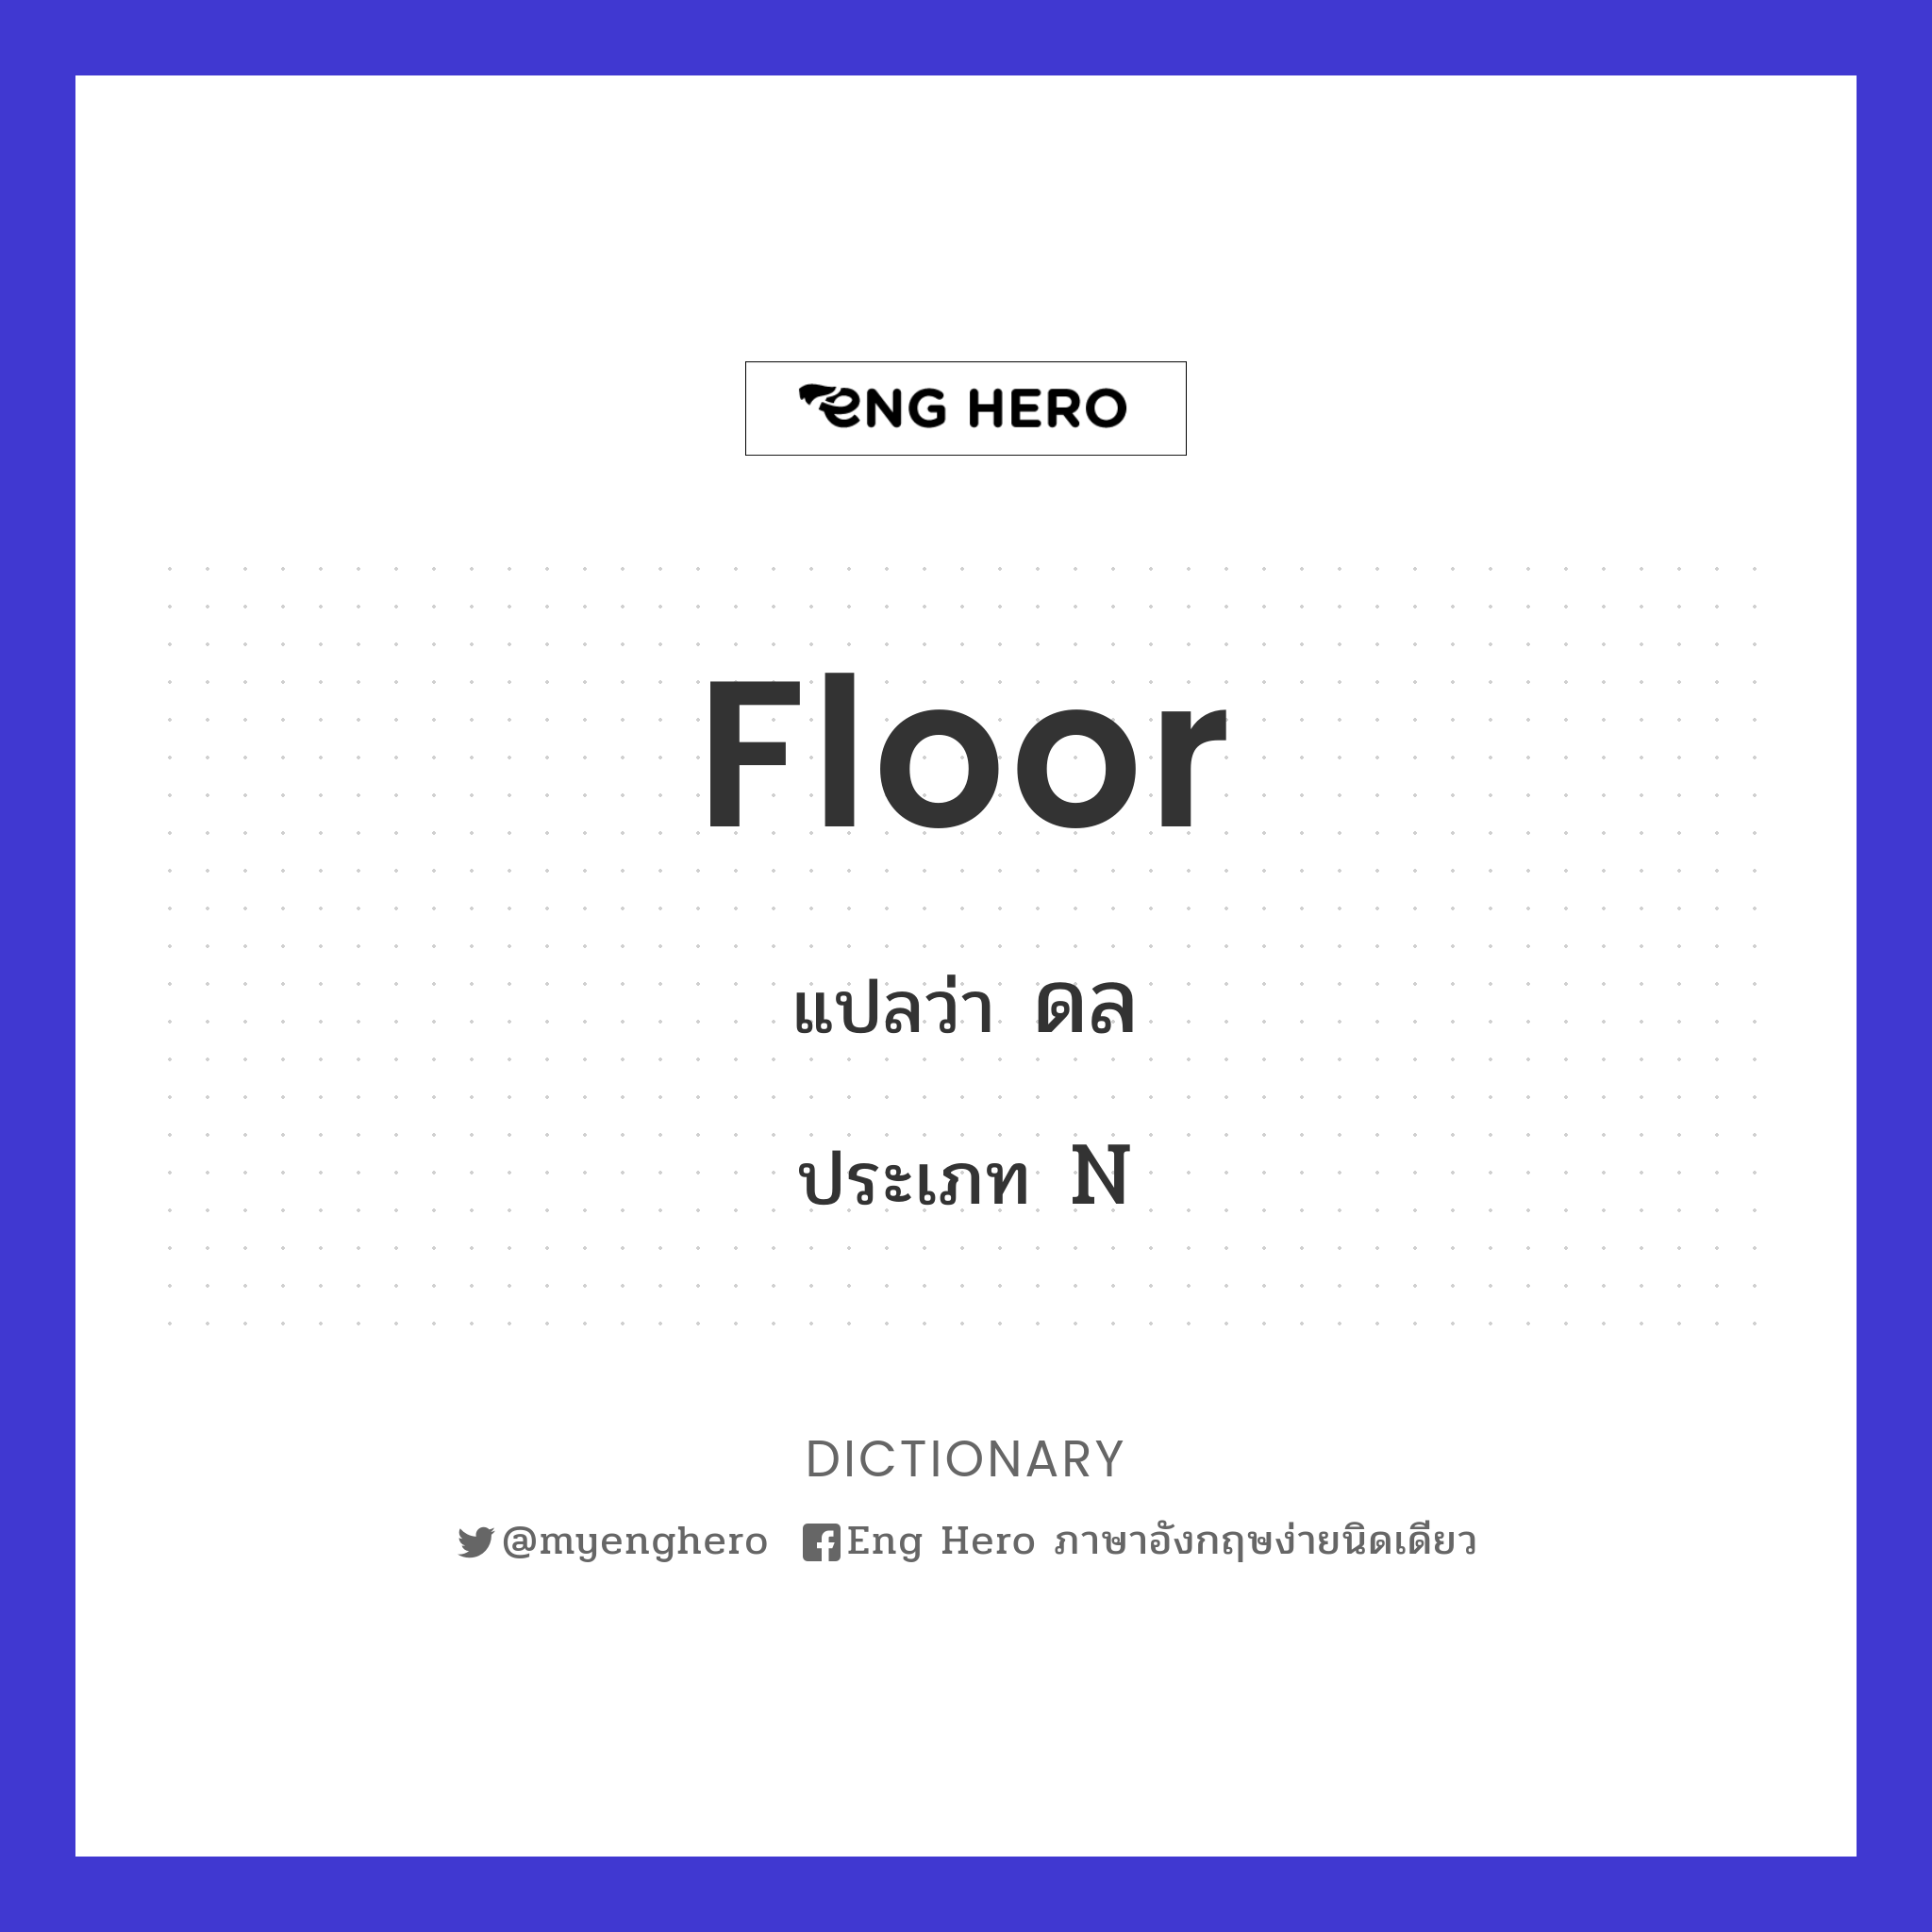 floor